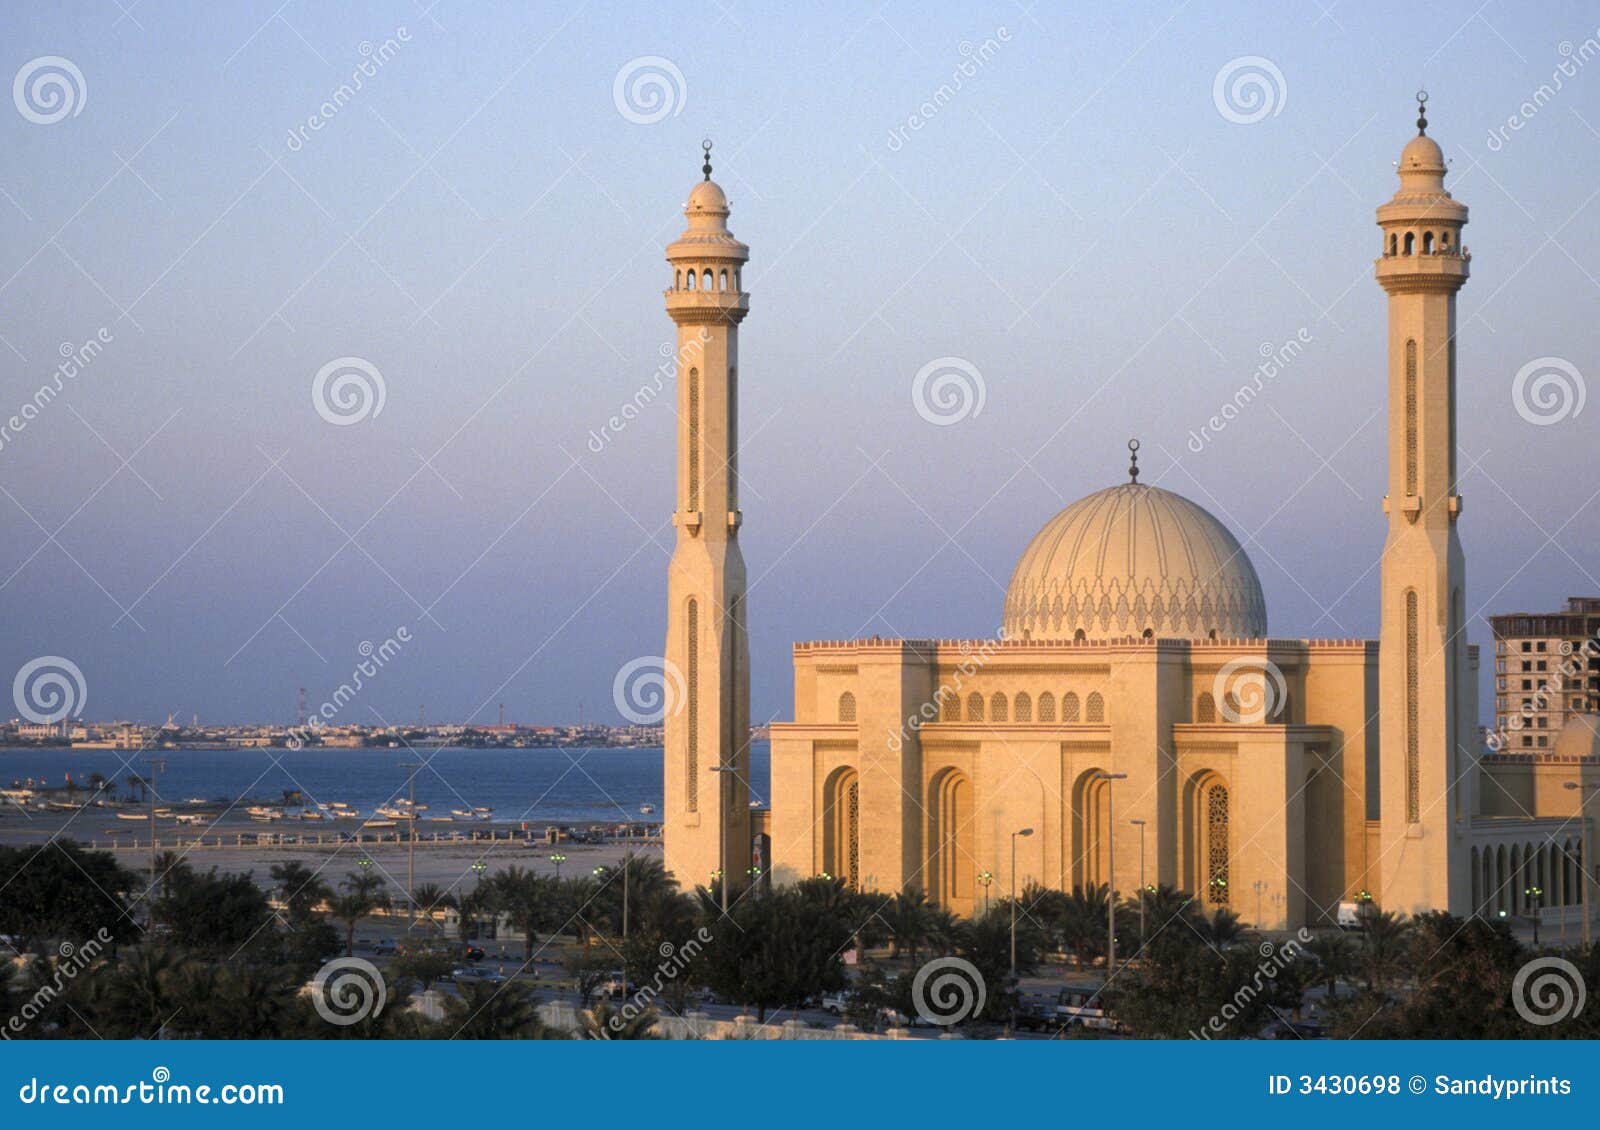 grand mosque bahrain